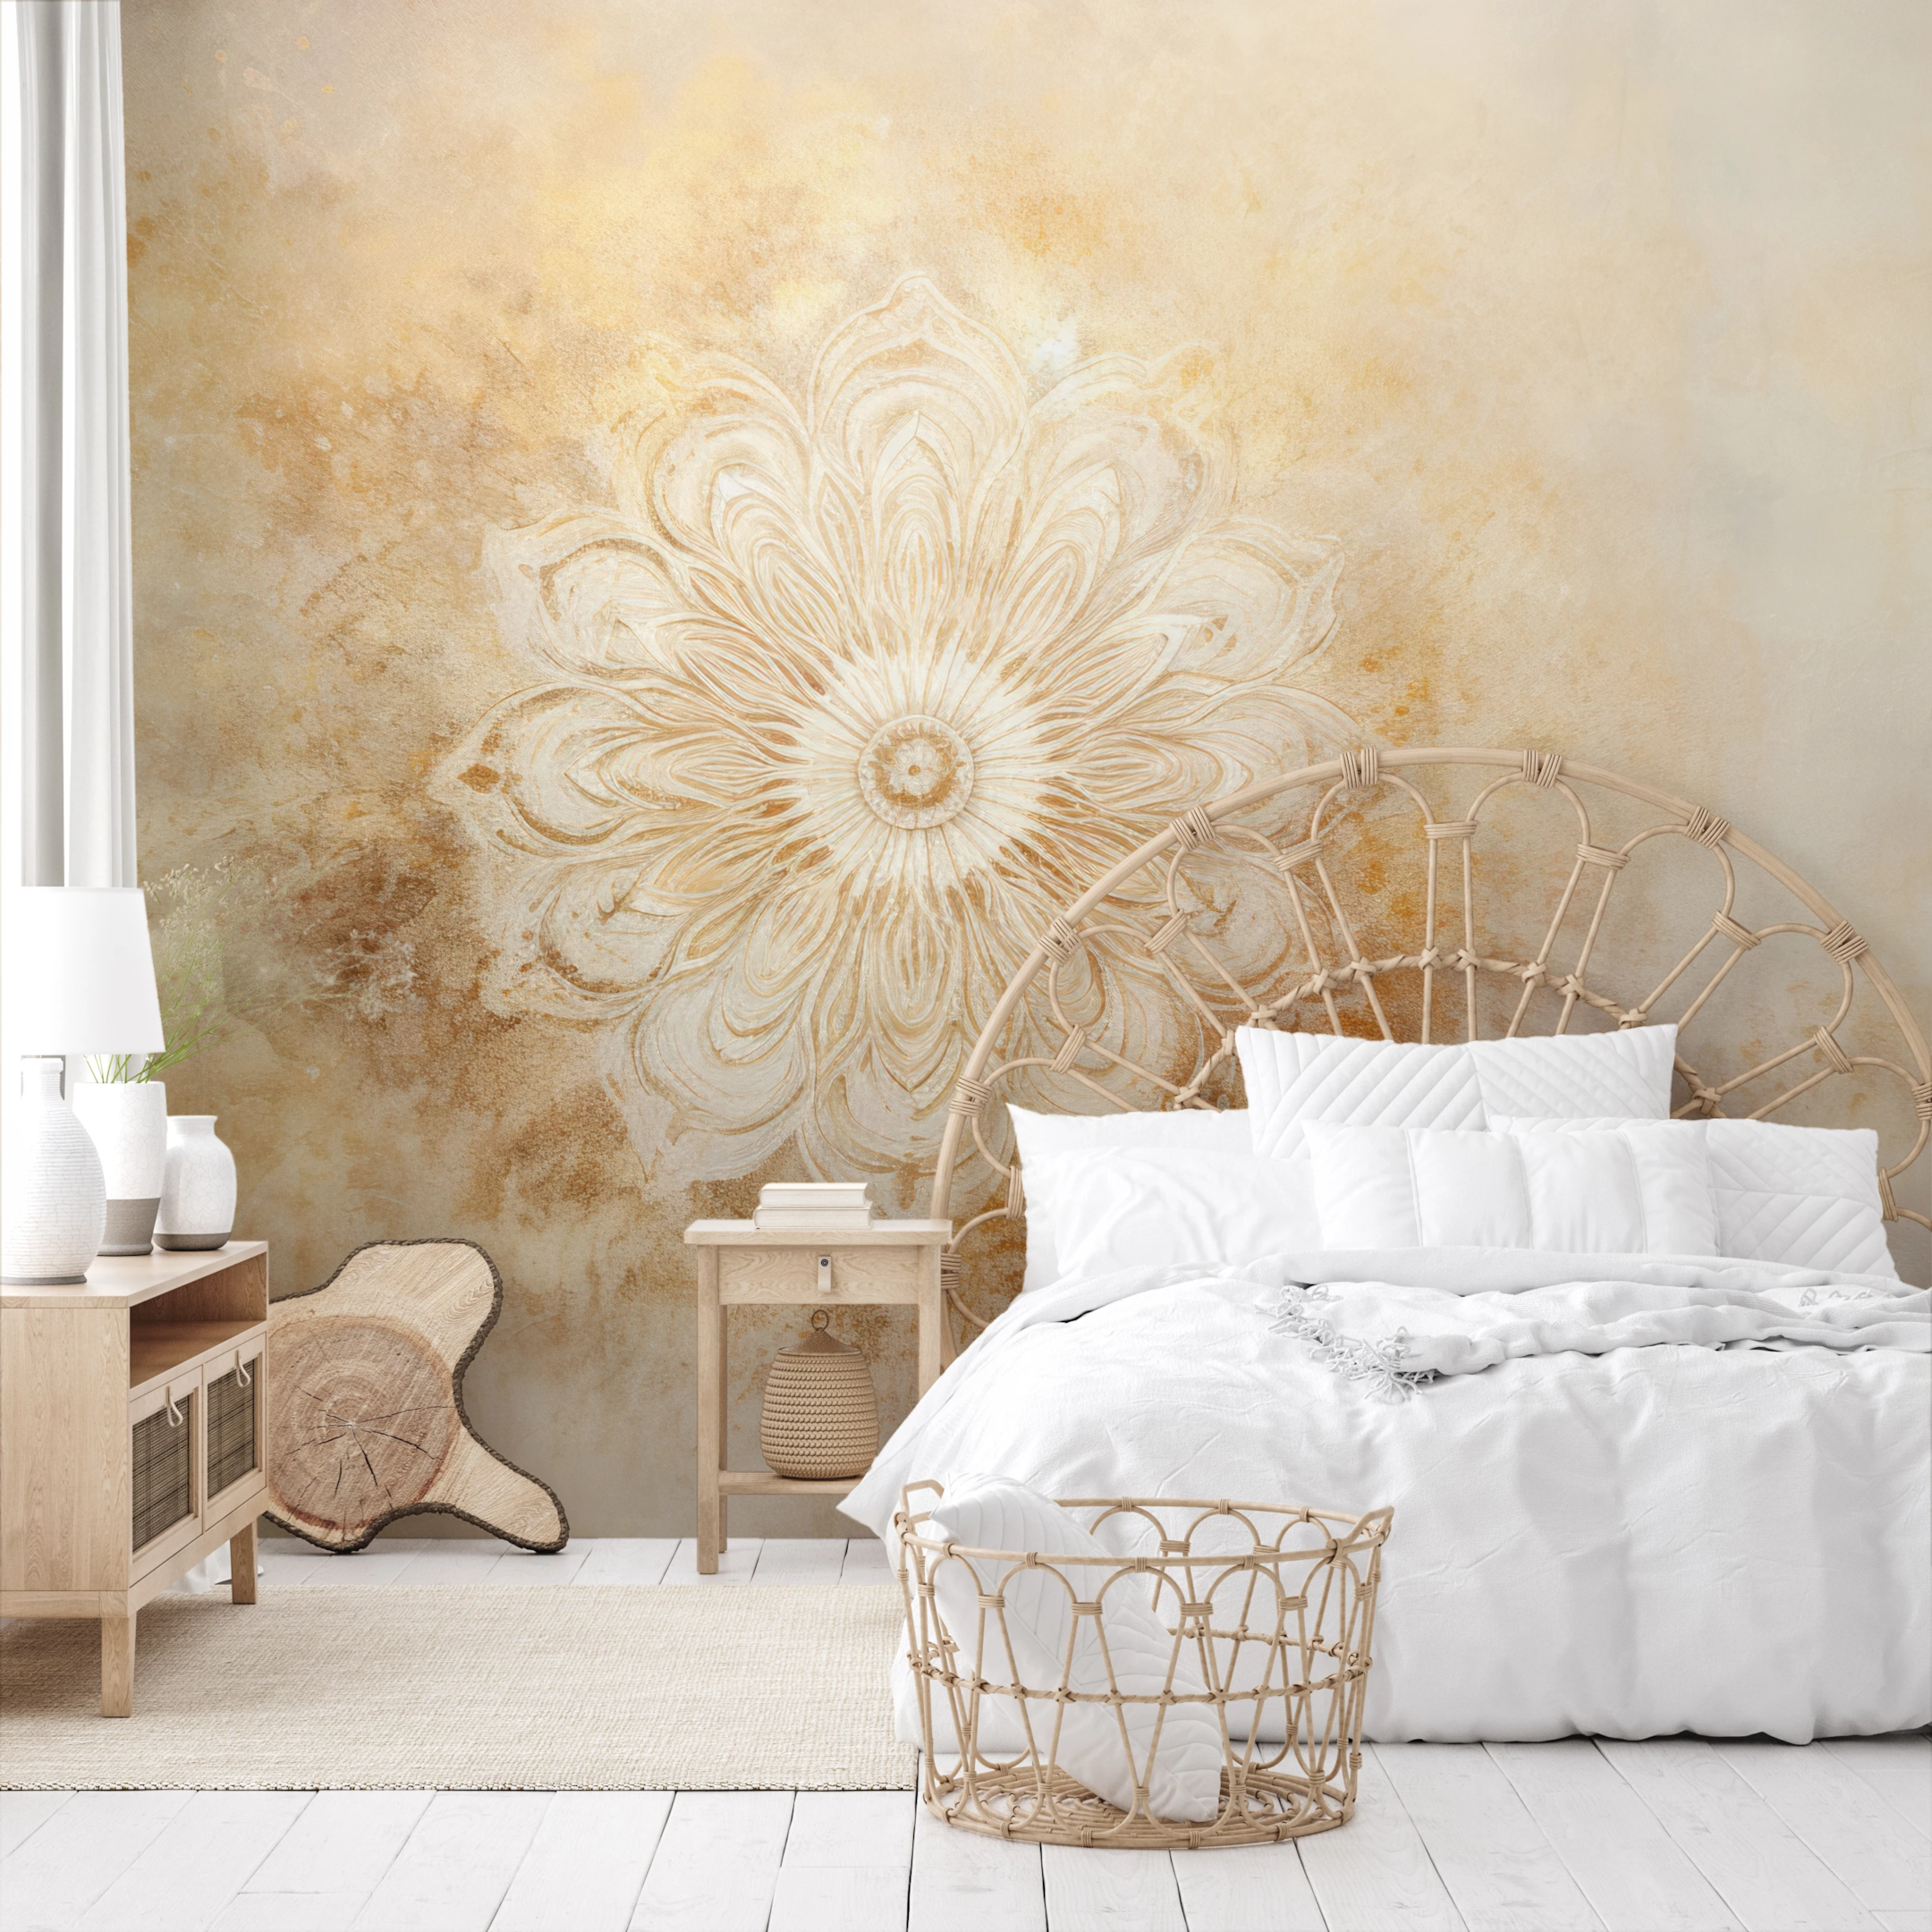 „Serene Flora“ ist eine Fototapete in sanften Beige- und Weißtönen mit einem zarten Blumenmotiv, das dem Innenraum Subtilität und Leichtigkeit verleiht. Dieses Design wird den Raum perfekt ergänzen und Elemente der Natur und Sauberkeit in ihn einbringen.